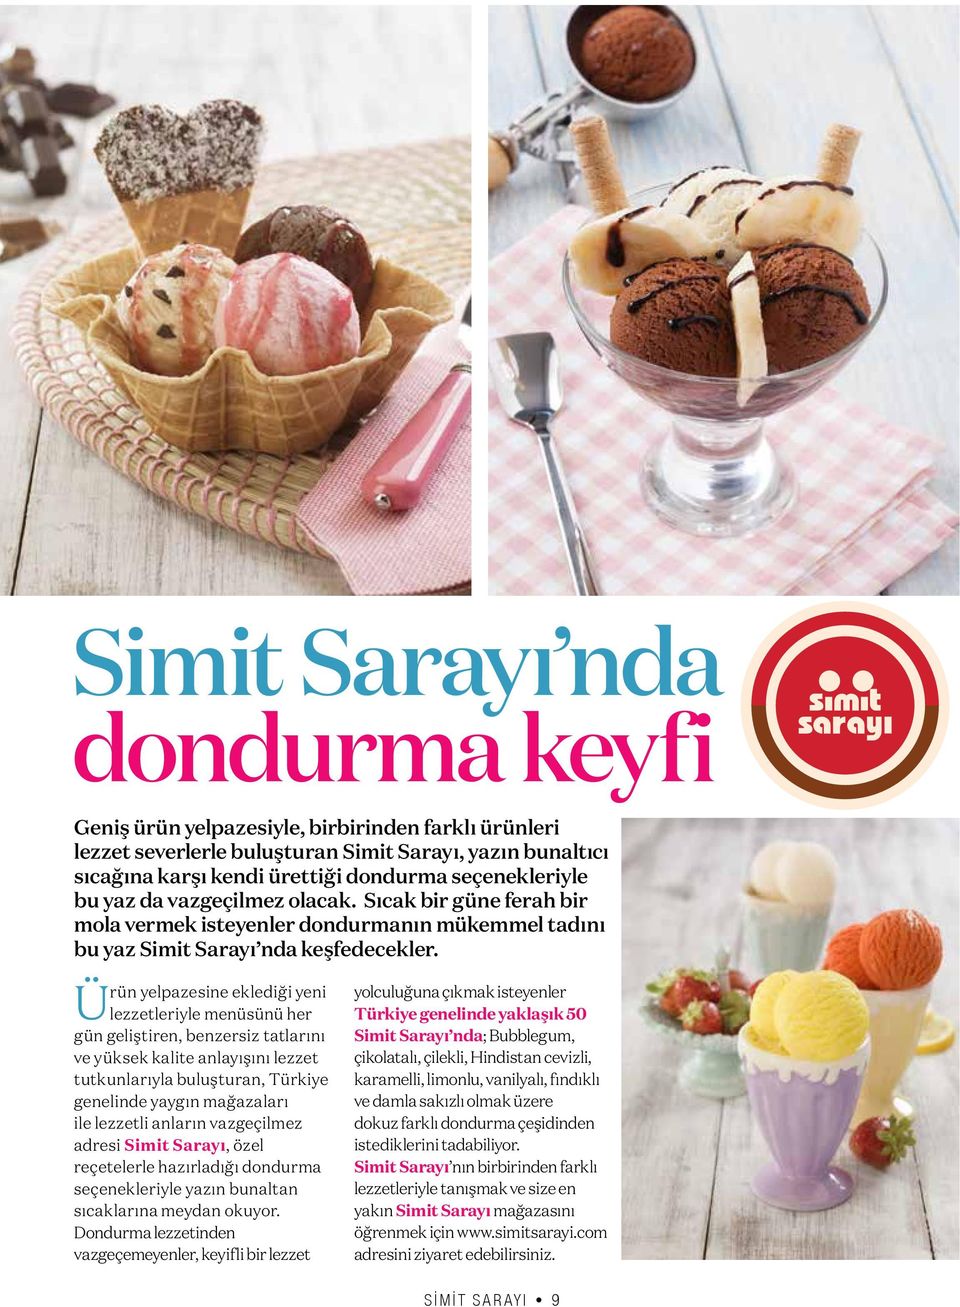 Ürün yelpazesine eklediği yeni lezzetleriyle menüsünü her gün geliştiren, benzersiz tatlarını ve yüksek kalite anlayışını lezzet tutkunlarıyla buluşturan, Türkiye genelinde yaygın mağazaları ile